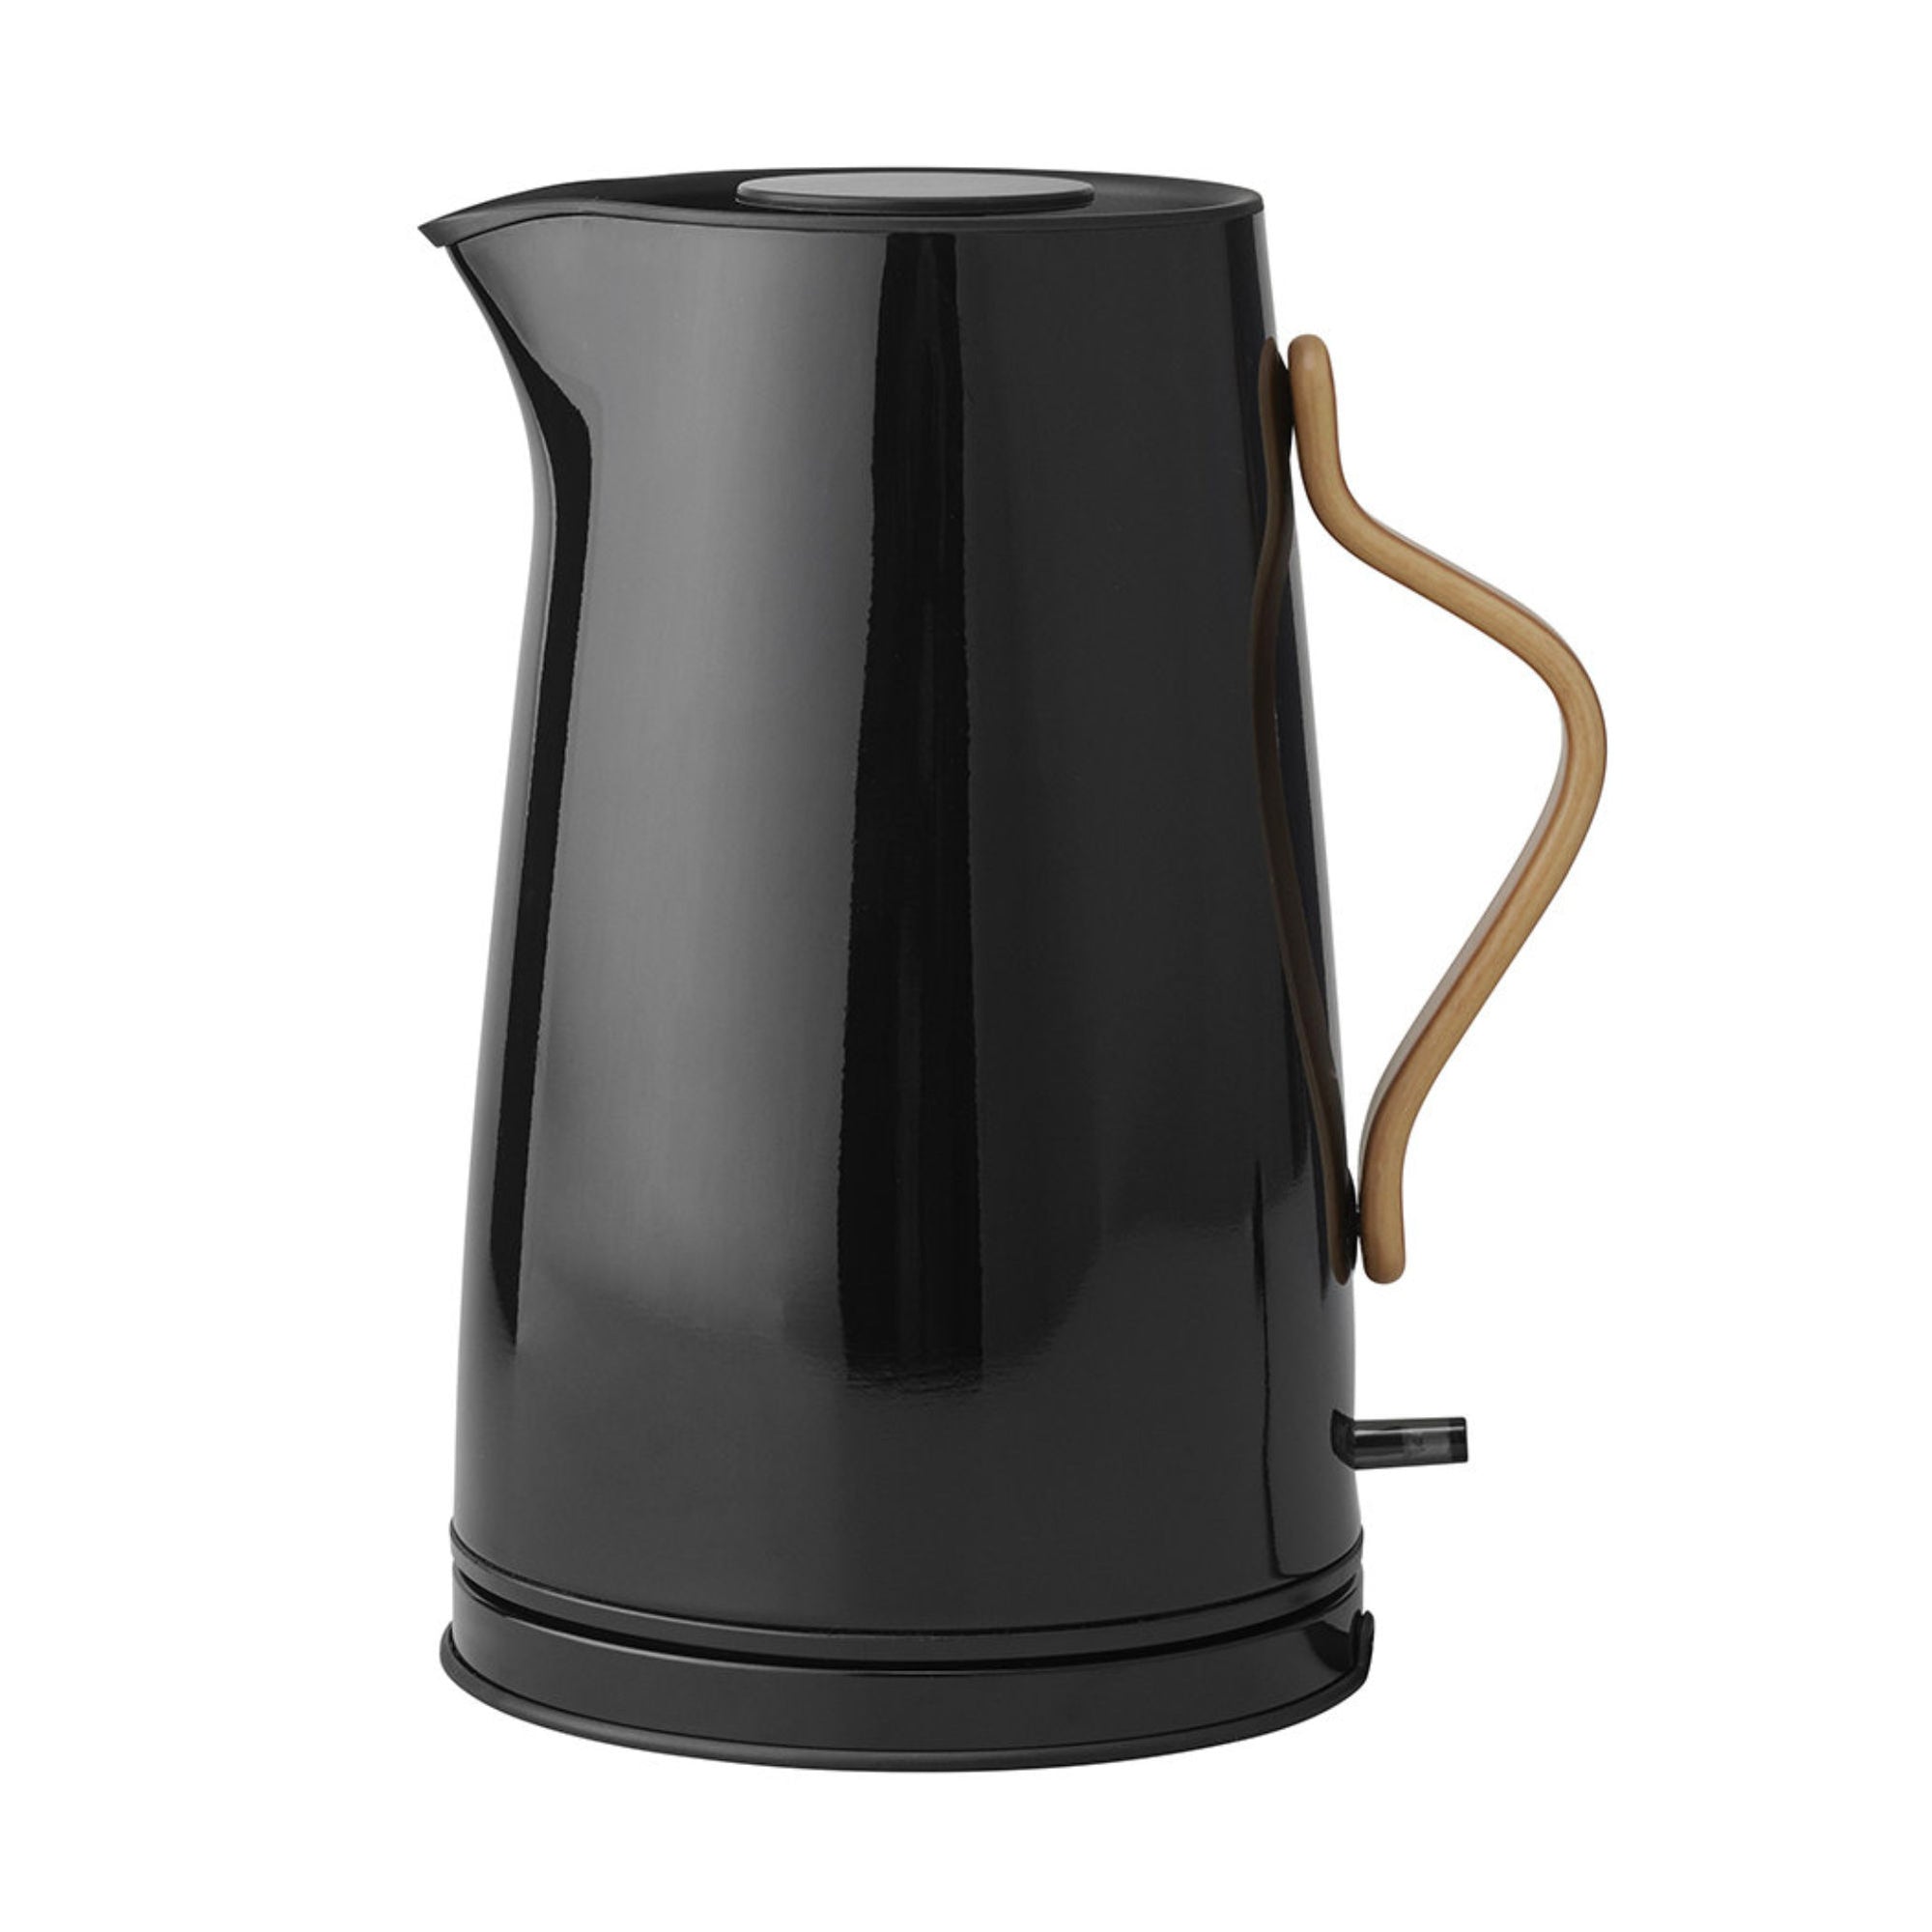 Stelton Emma electric kettle (1.2L)